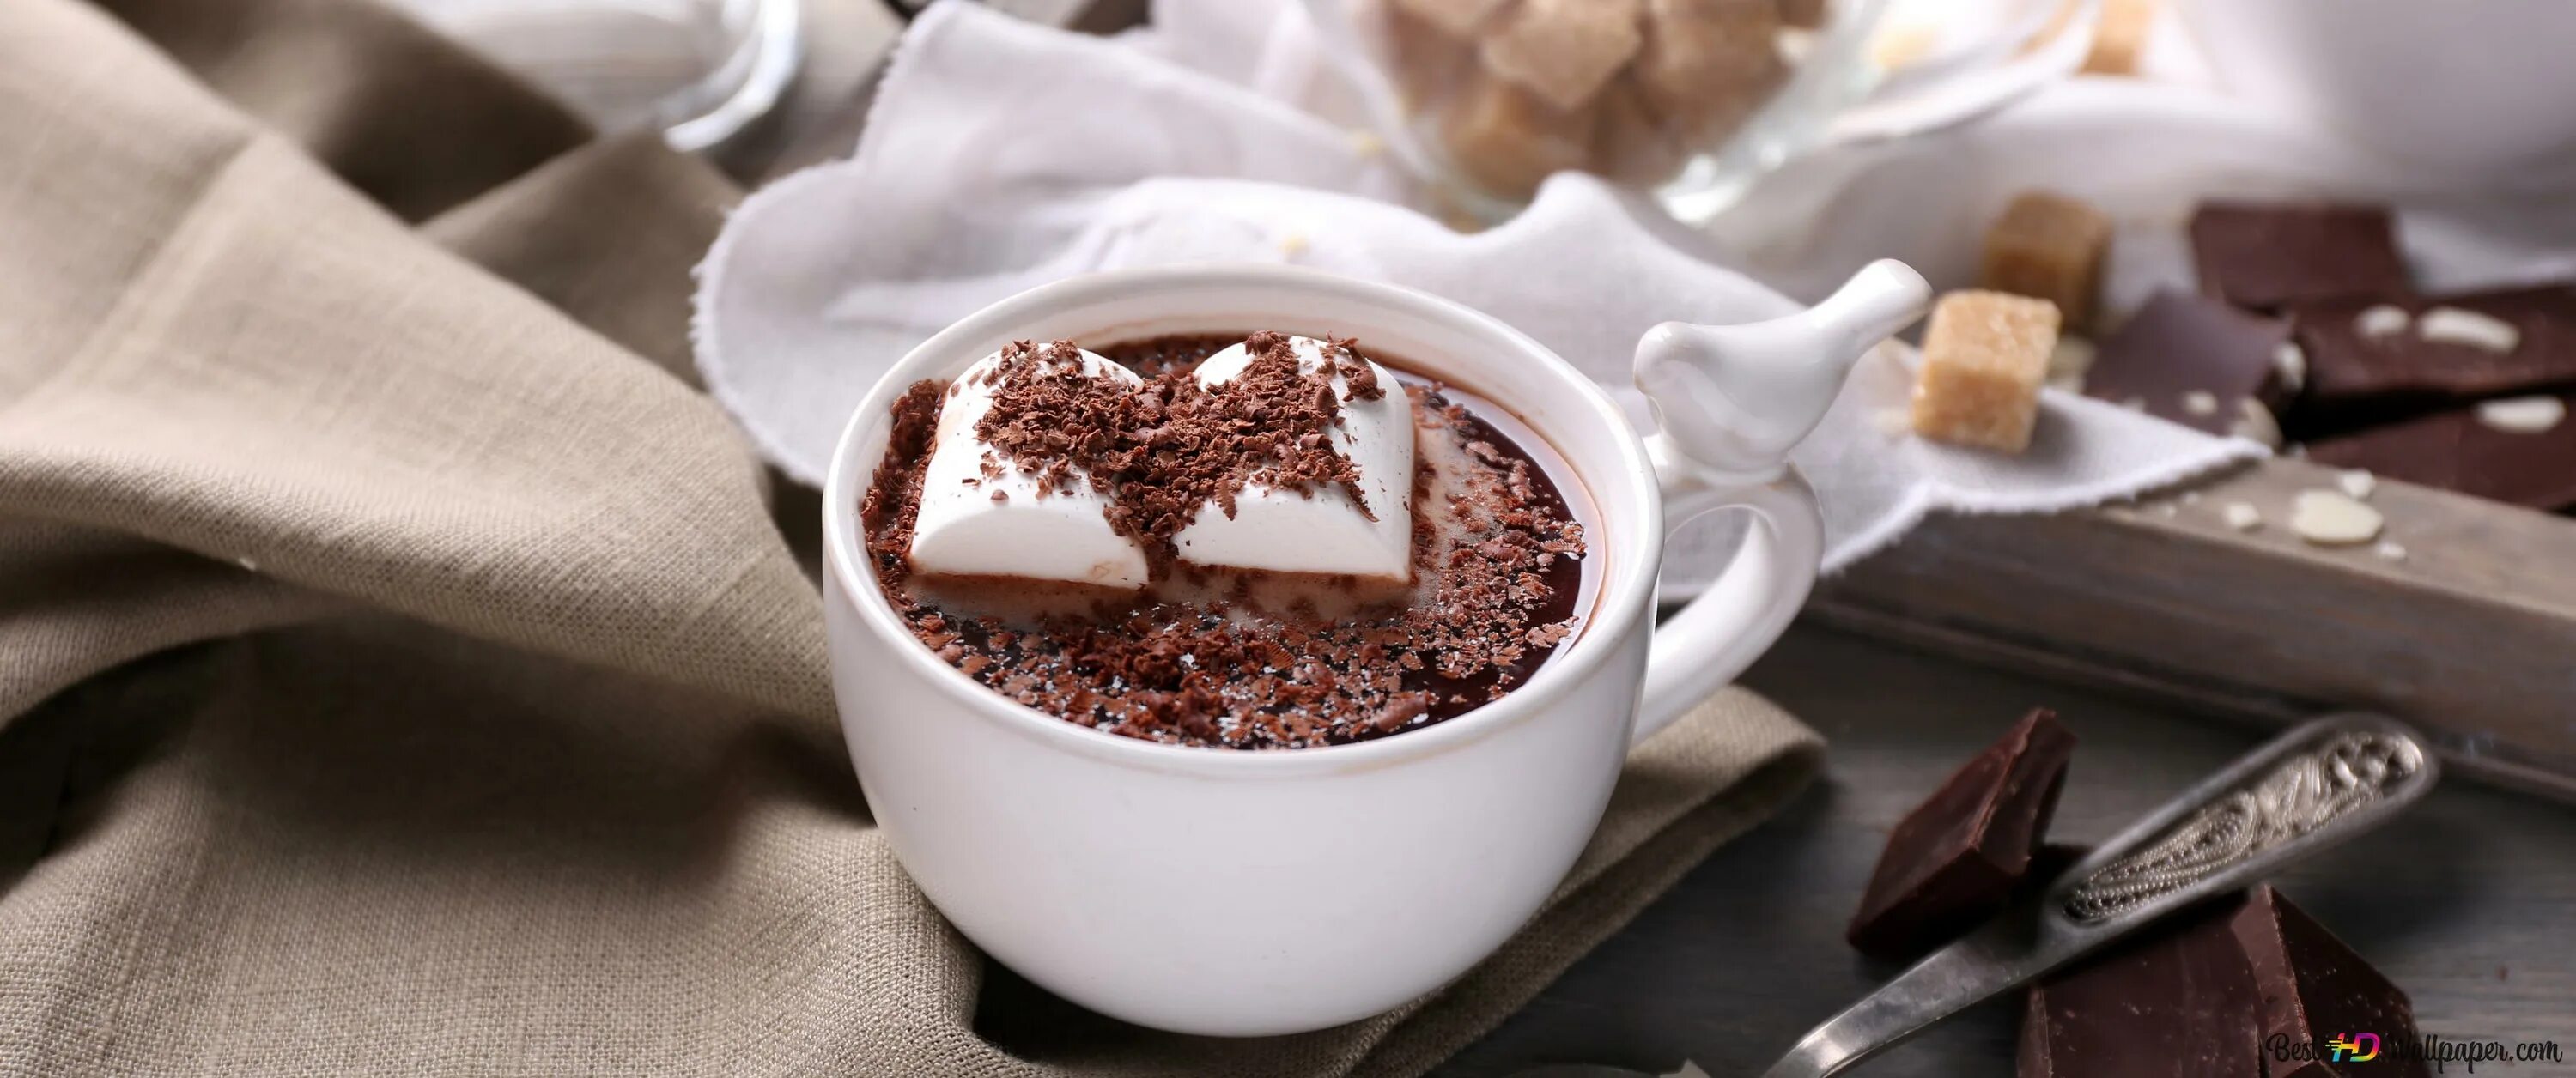 Горячий шоколад. Горячий шоколад HD. Молочный шоколад чашка. Кофе с тертым шоколадом вид сверху.